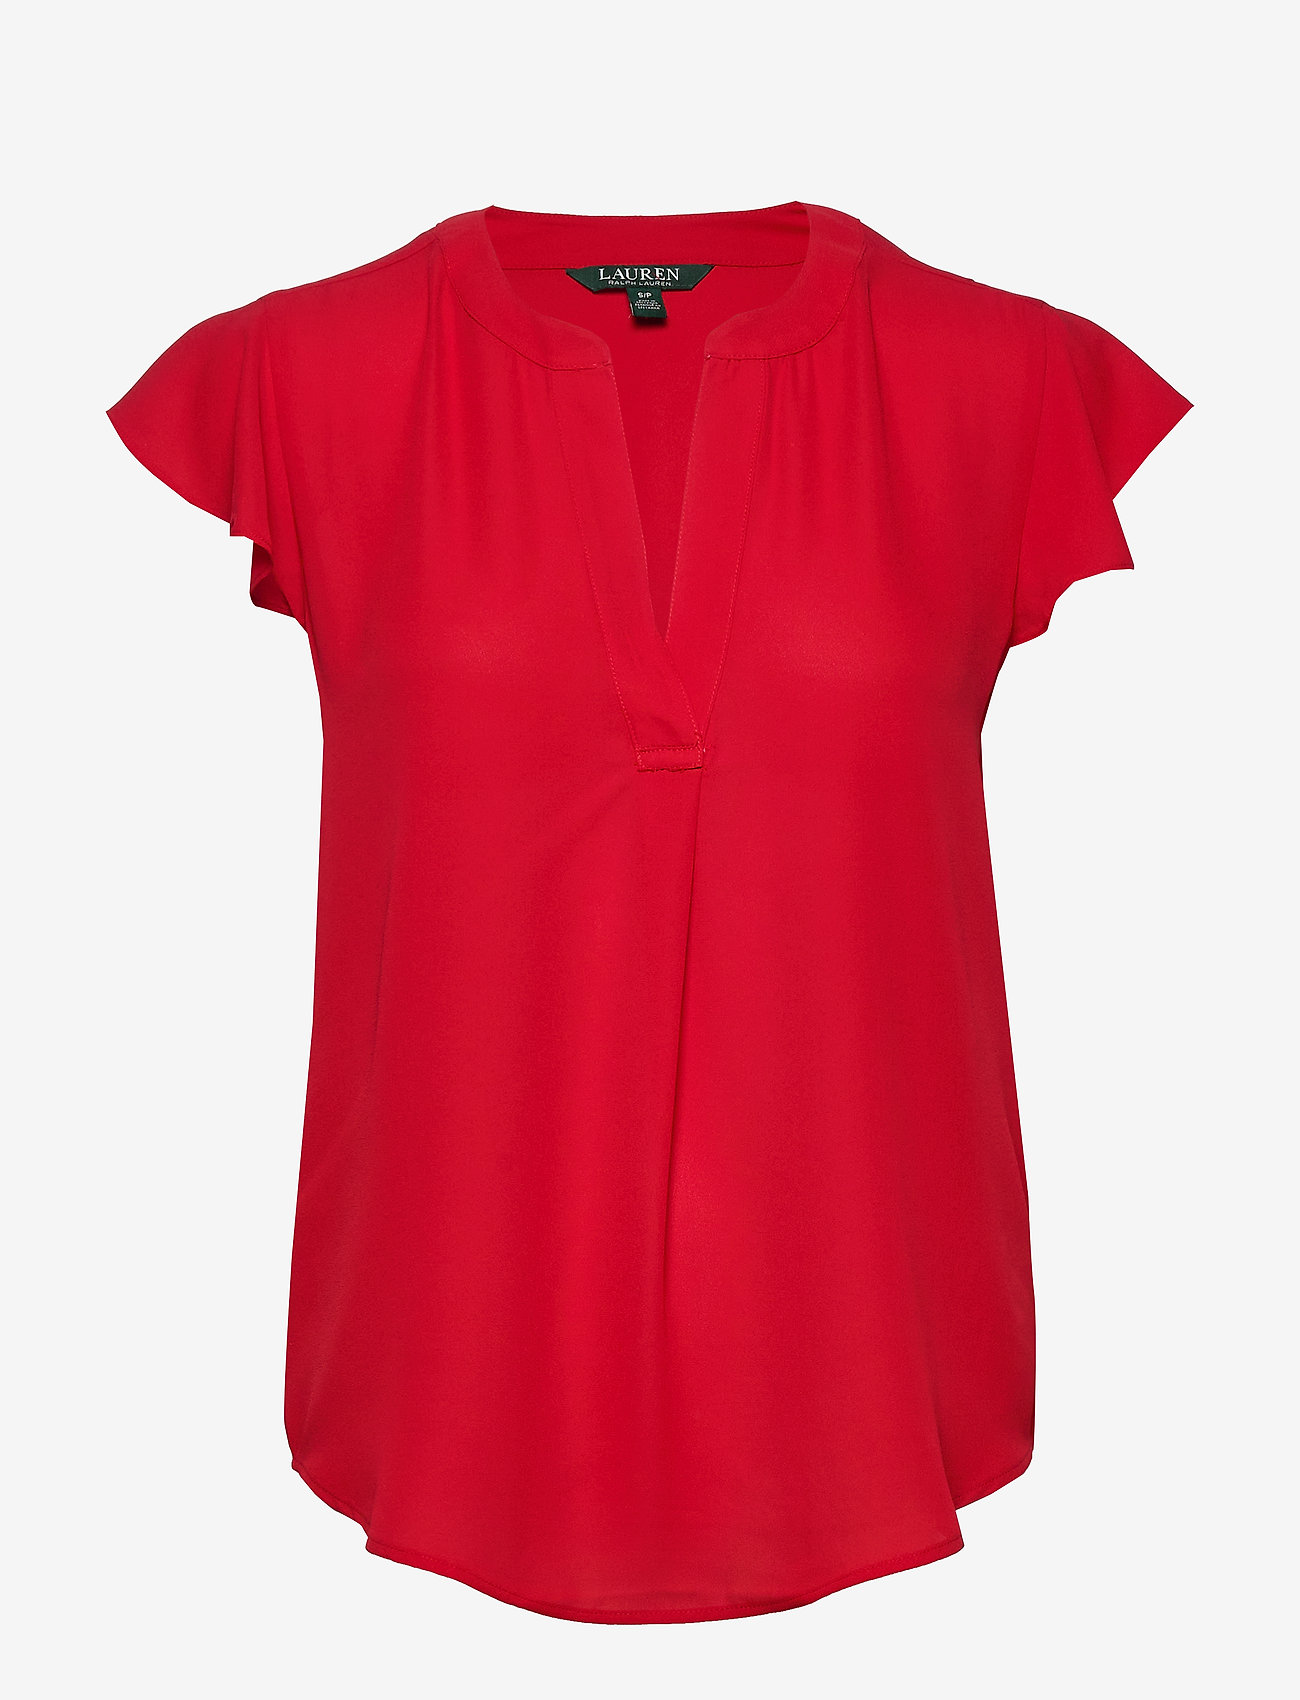 ralph lauren red blouse